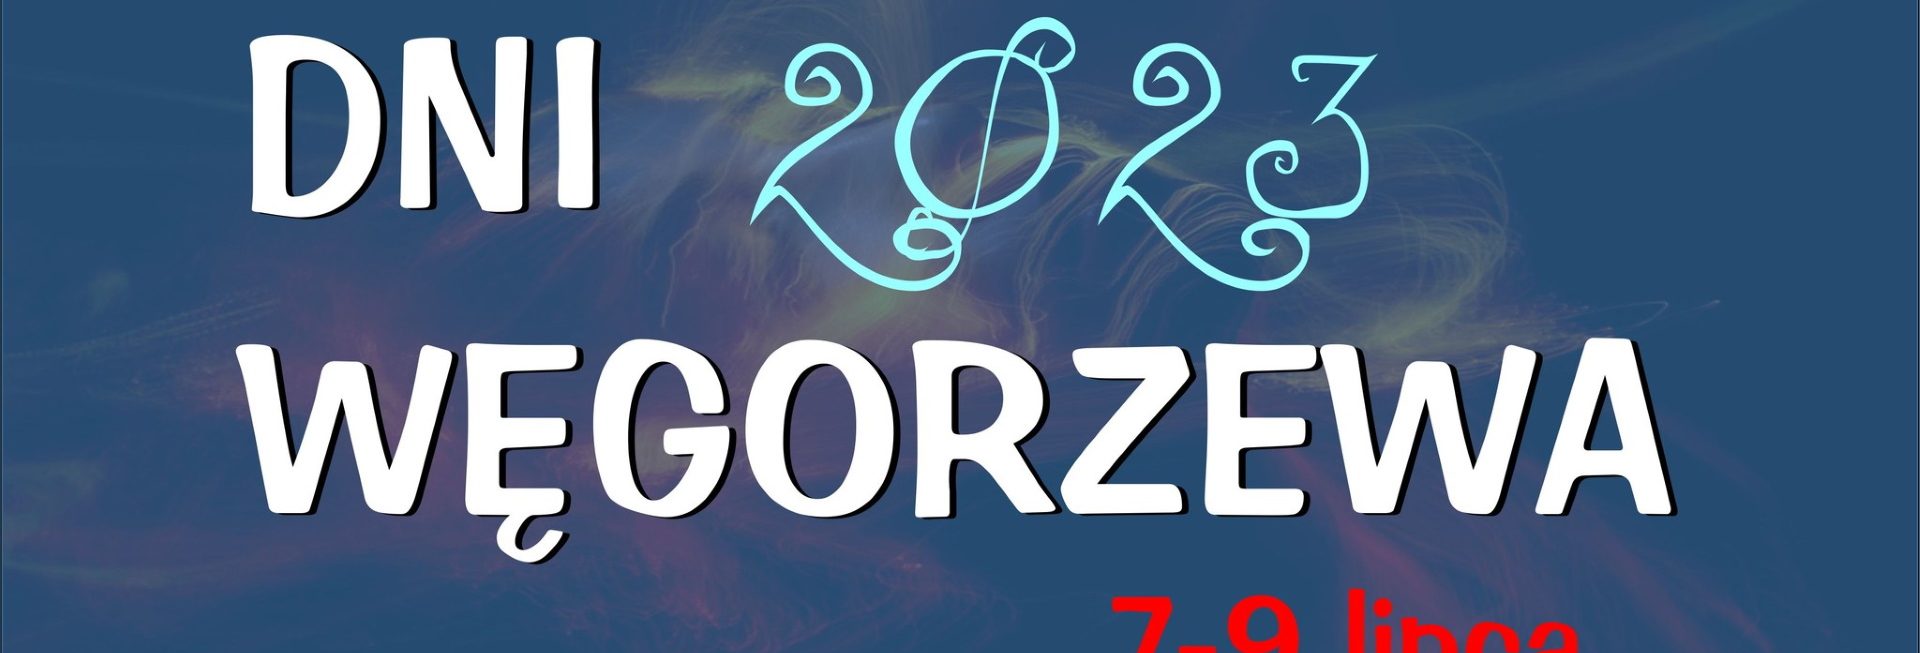 Plakat zapraszający w dniach 7-9 lipca 2023 r. do Węgorzewa na coroczną imprezę Dni Węgorzewa 2023.